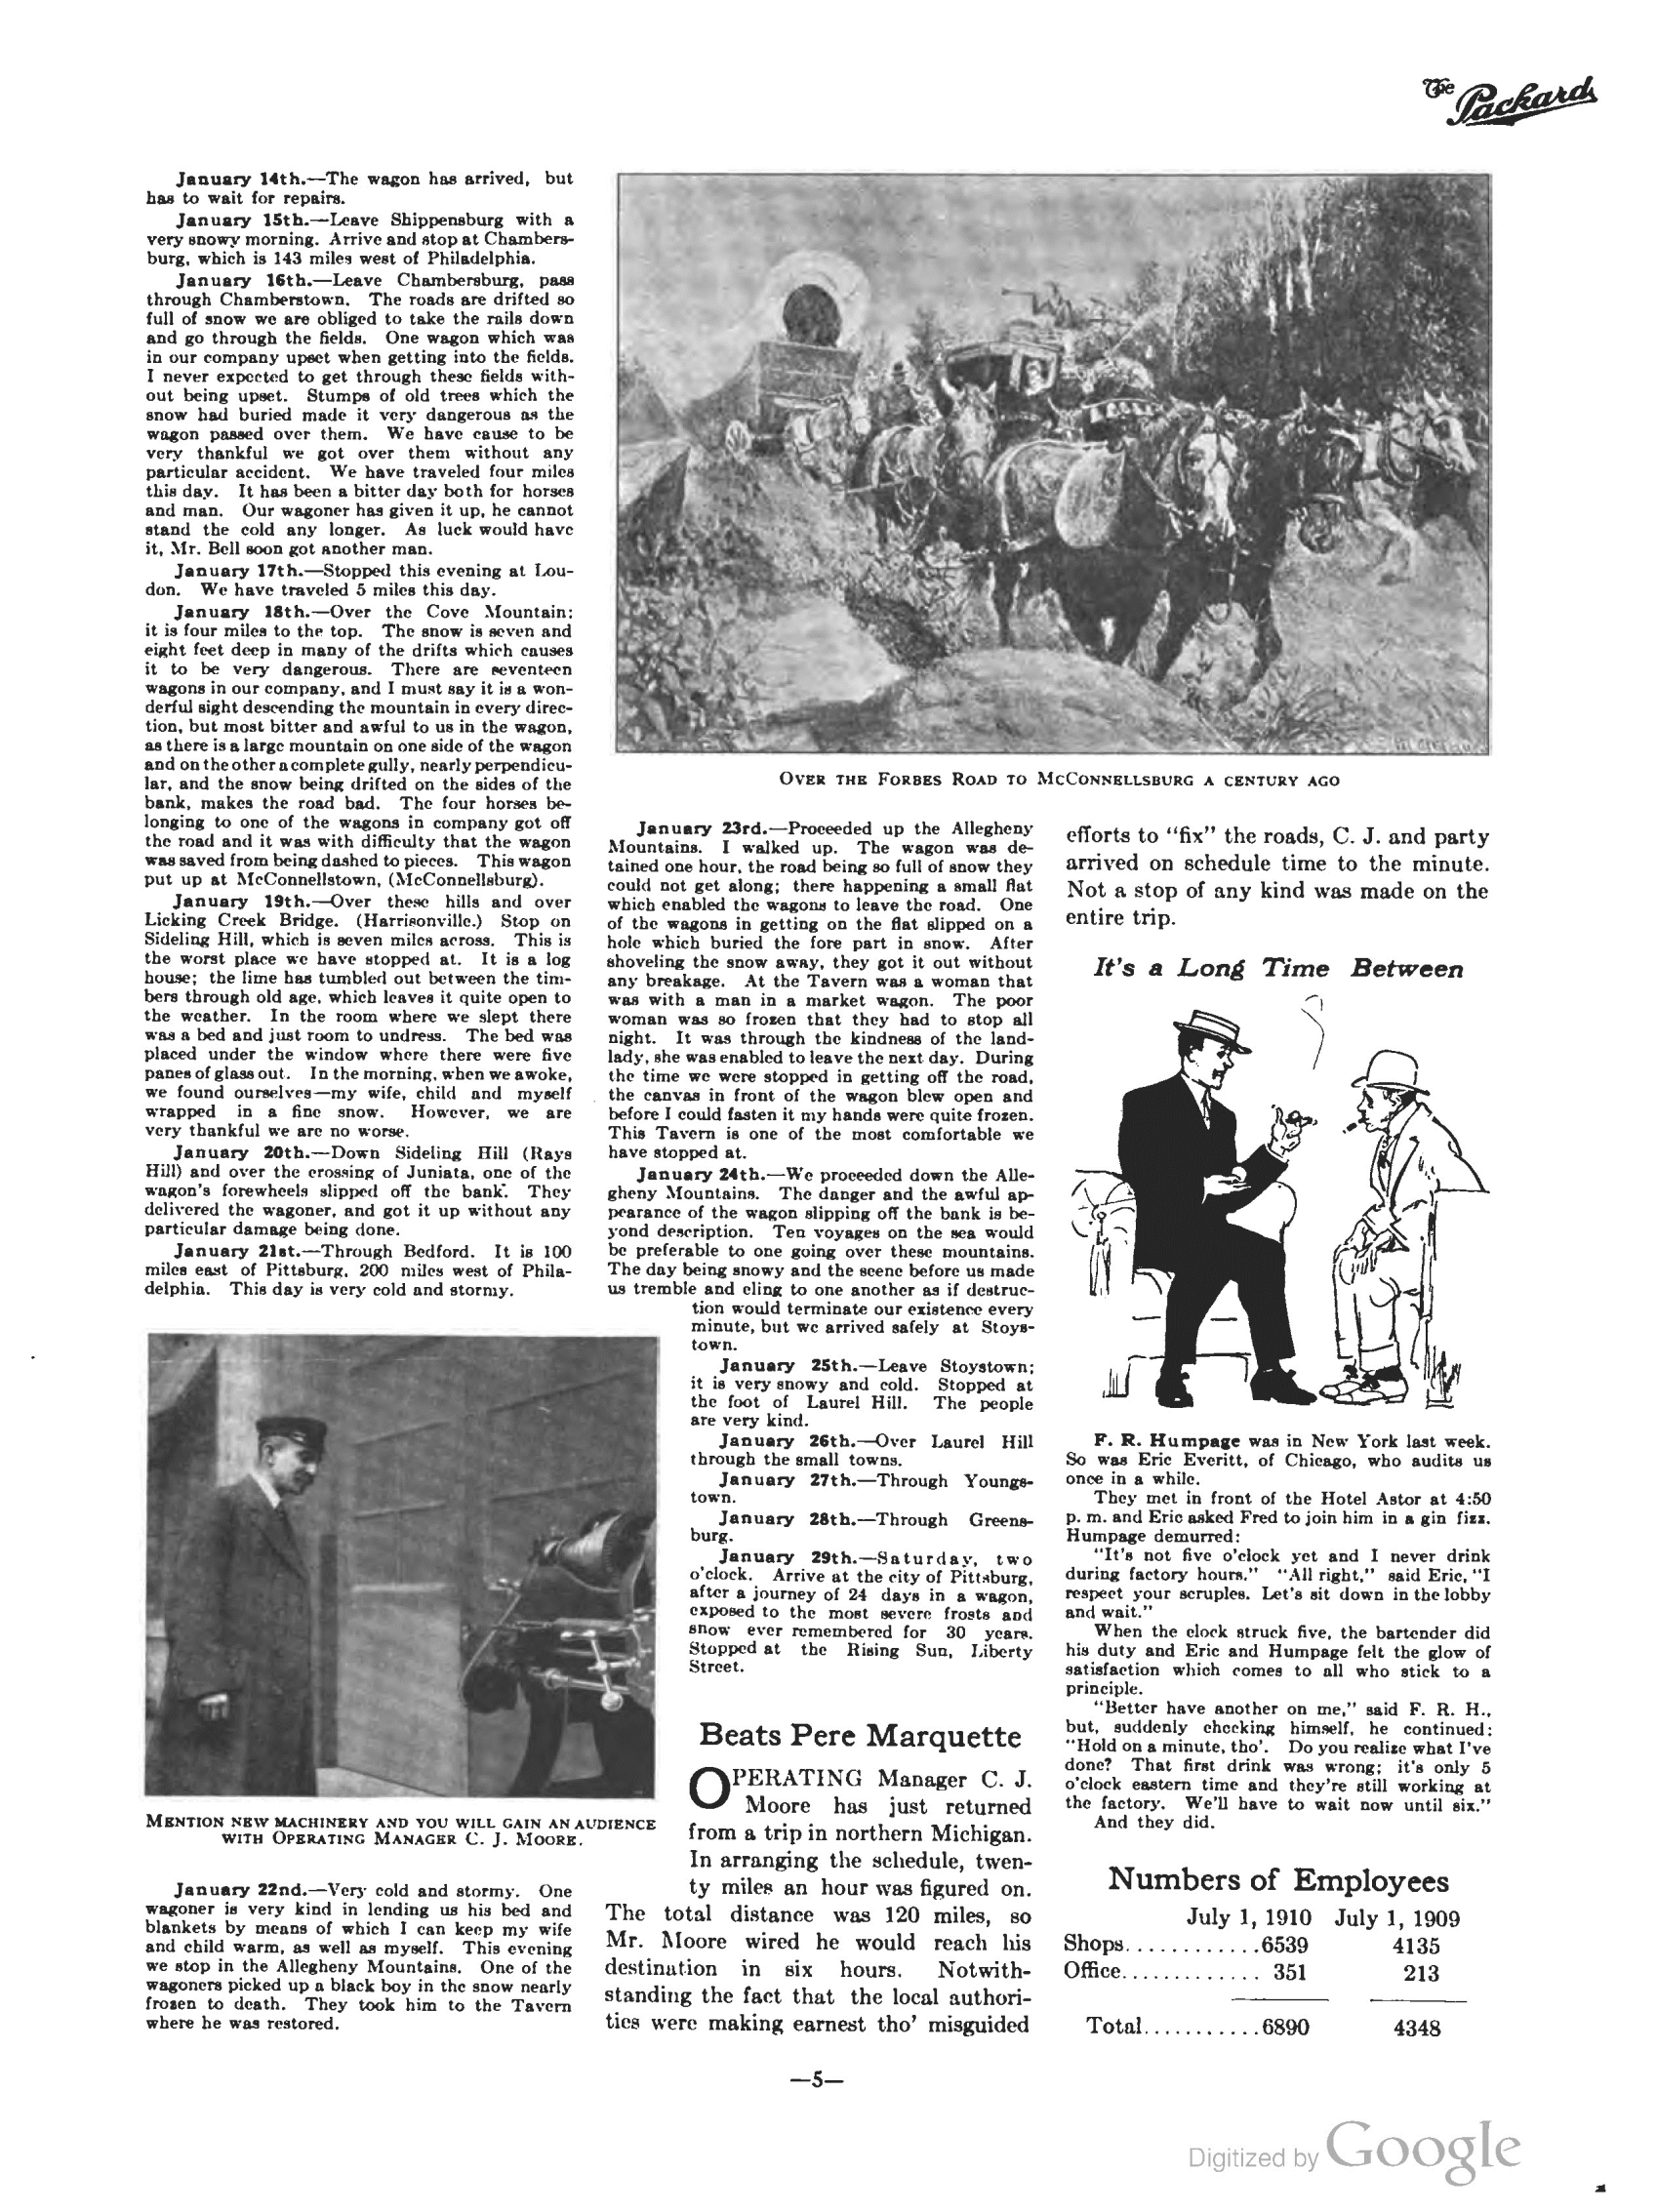 1910_The_Packard_Newsletter-055